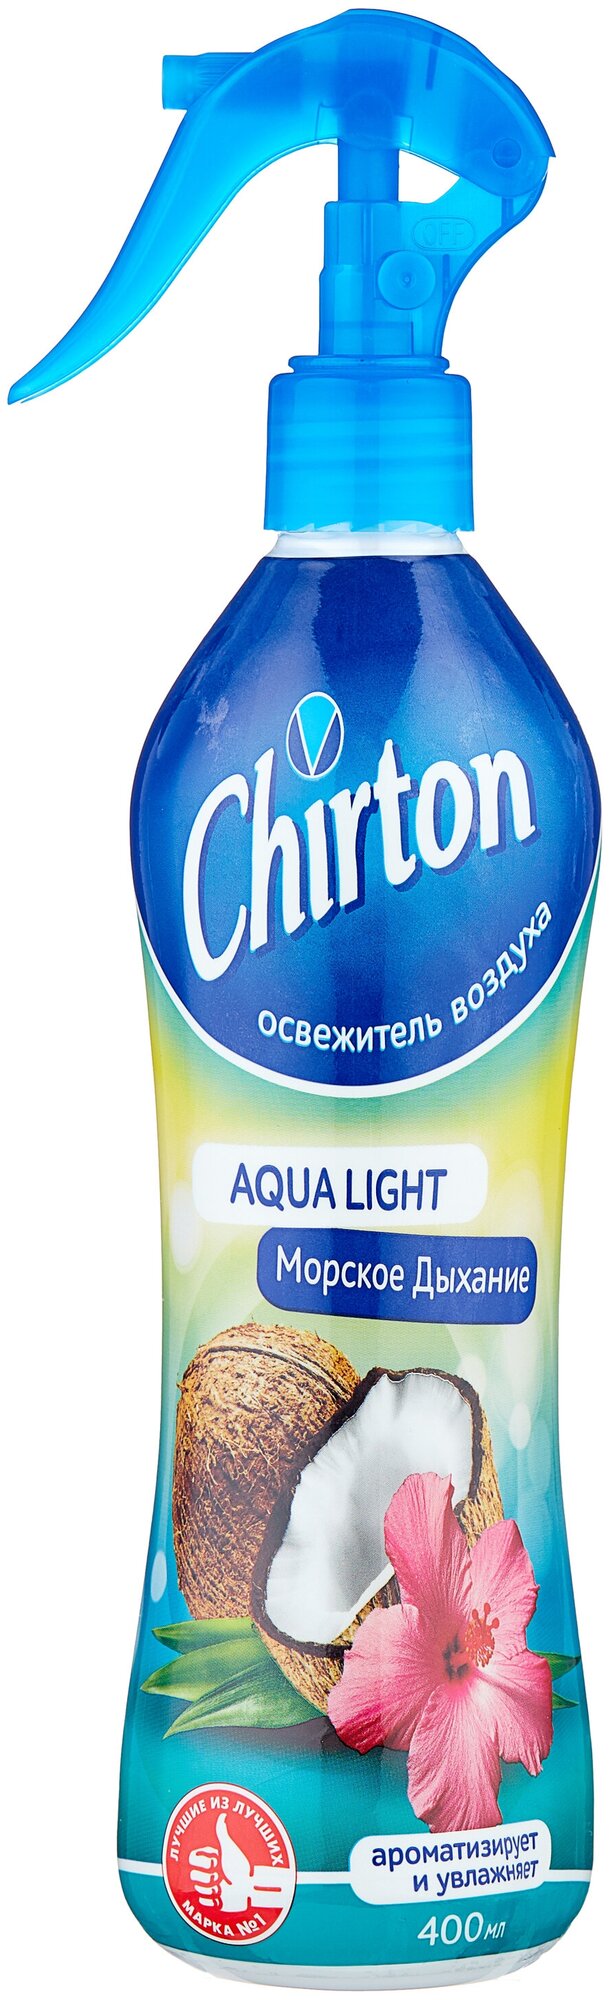 Chirton спрей Aqua Light Морское дыхание, 400 мл